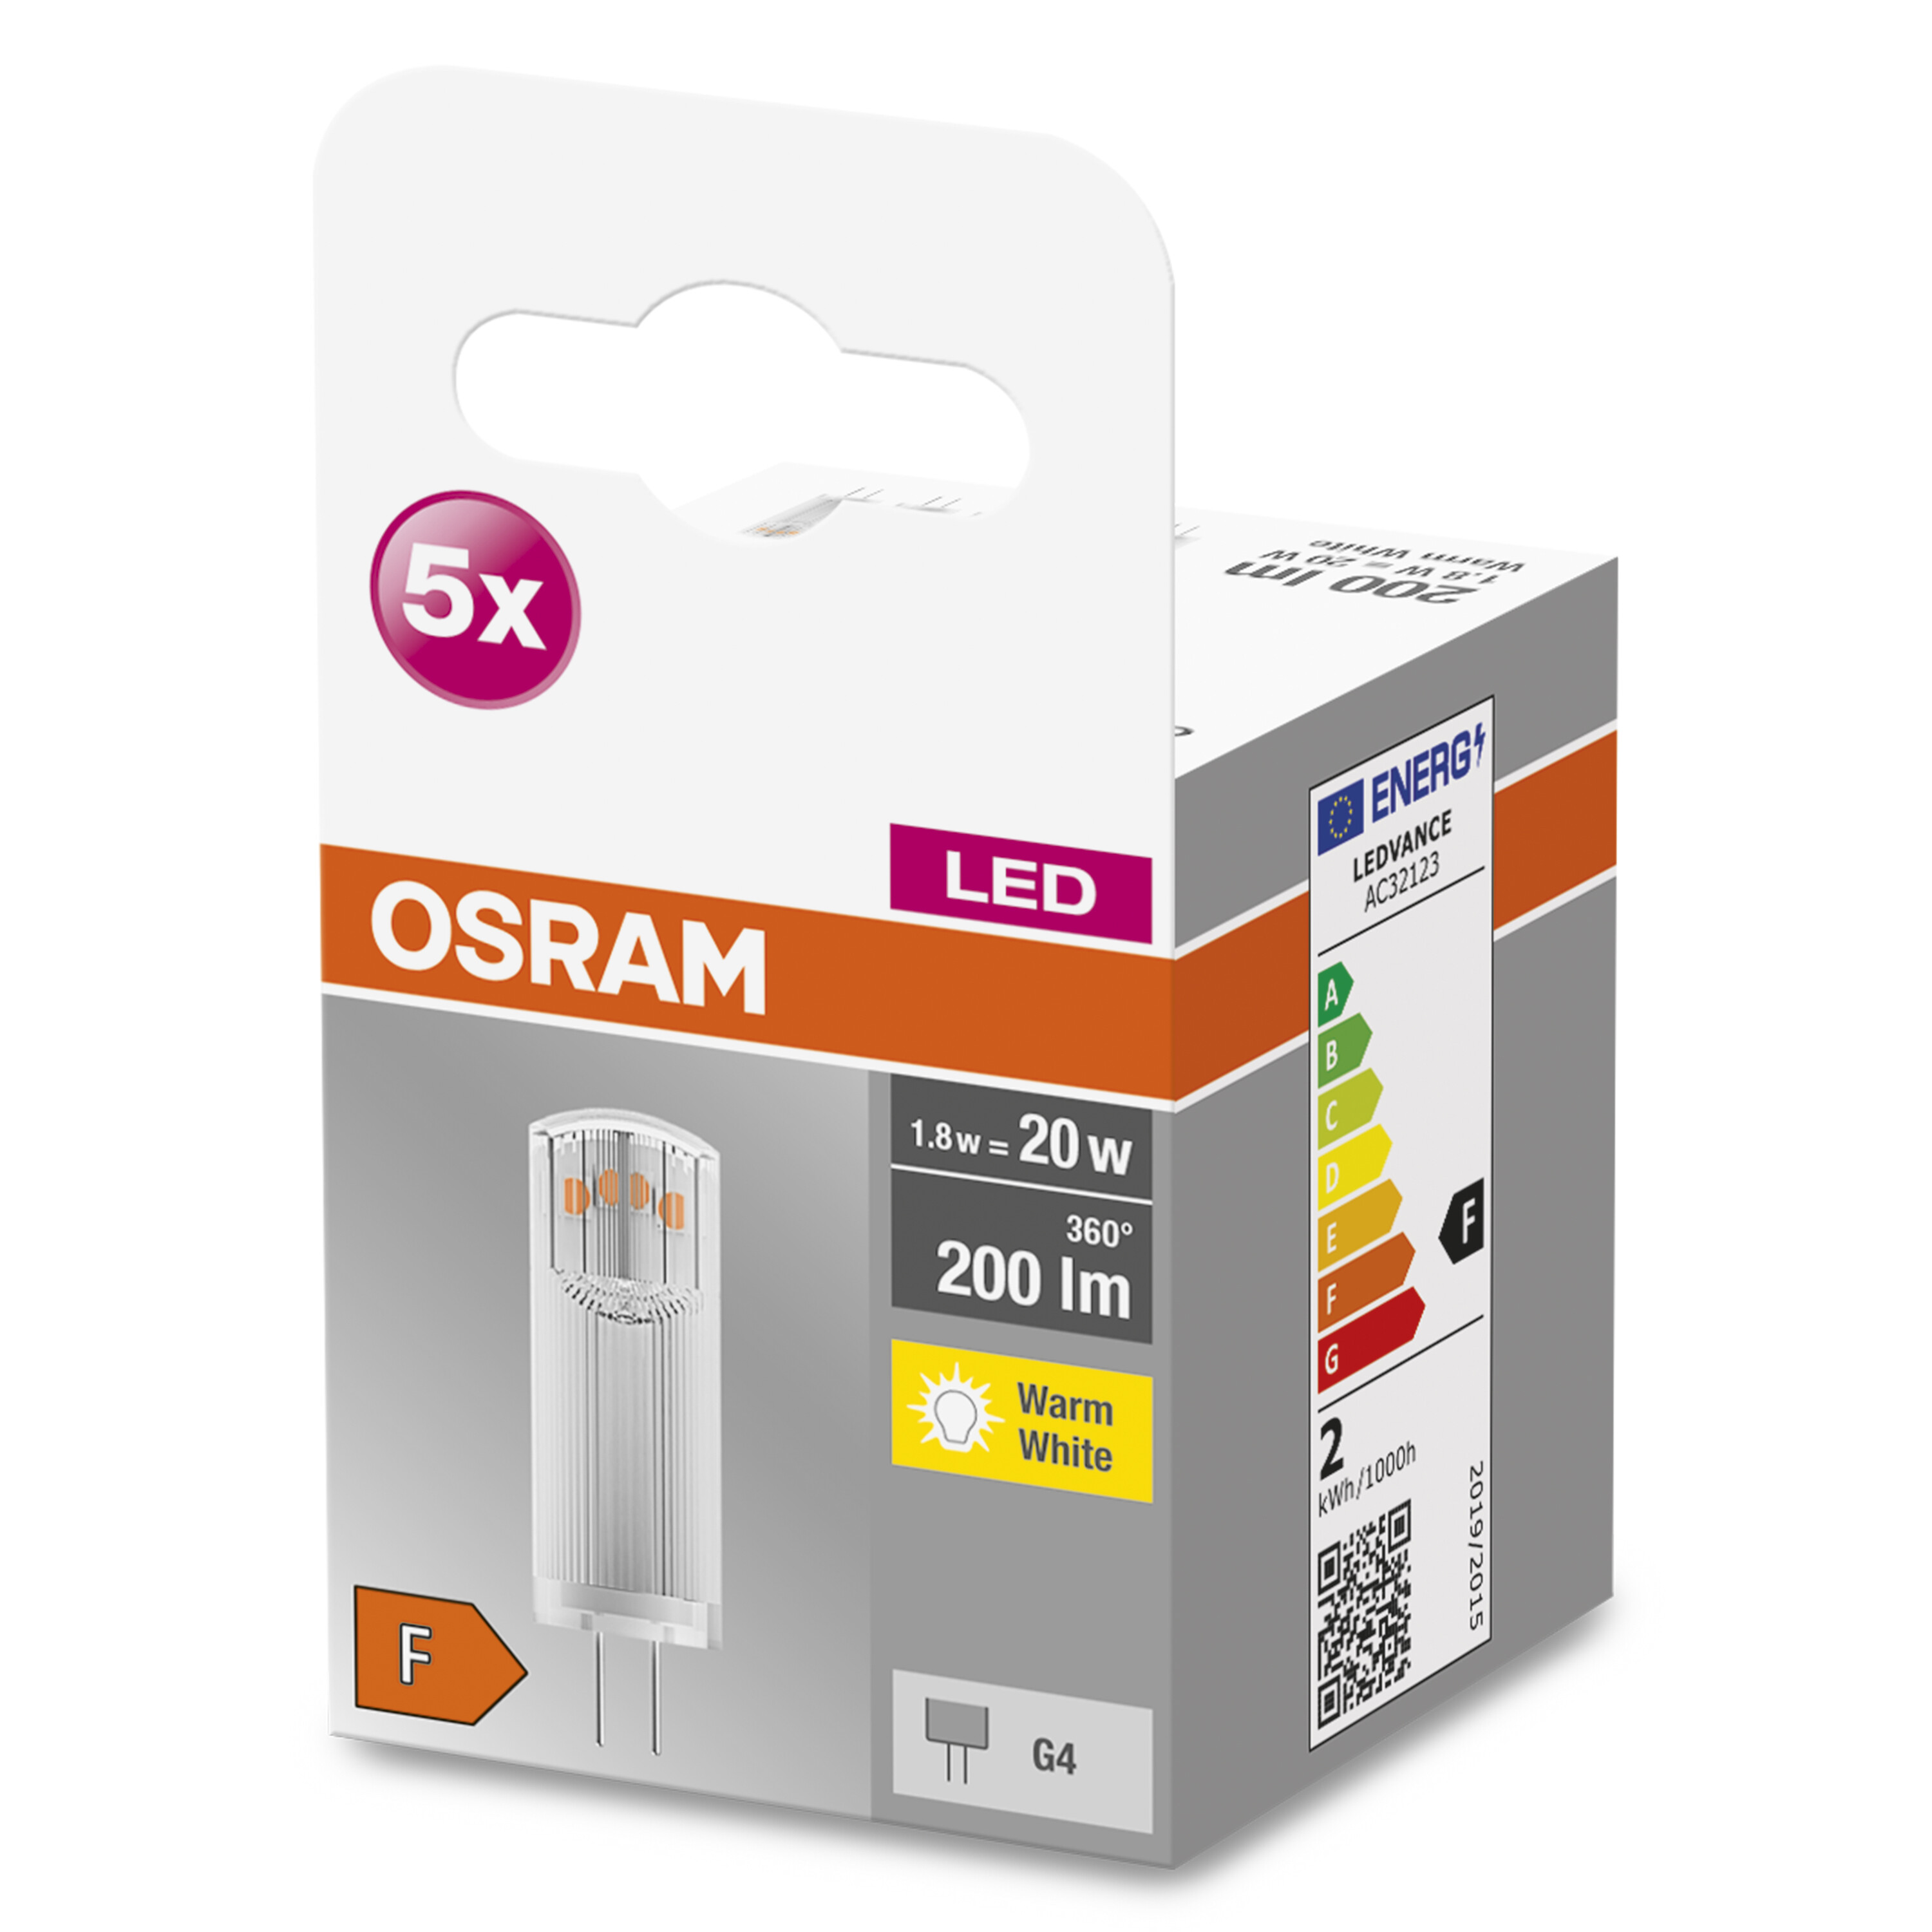 PIN 200 G4 LED V LED 12 BASE Warmweiß Lampe Lumen OSRAM 